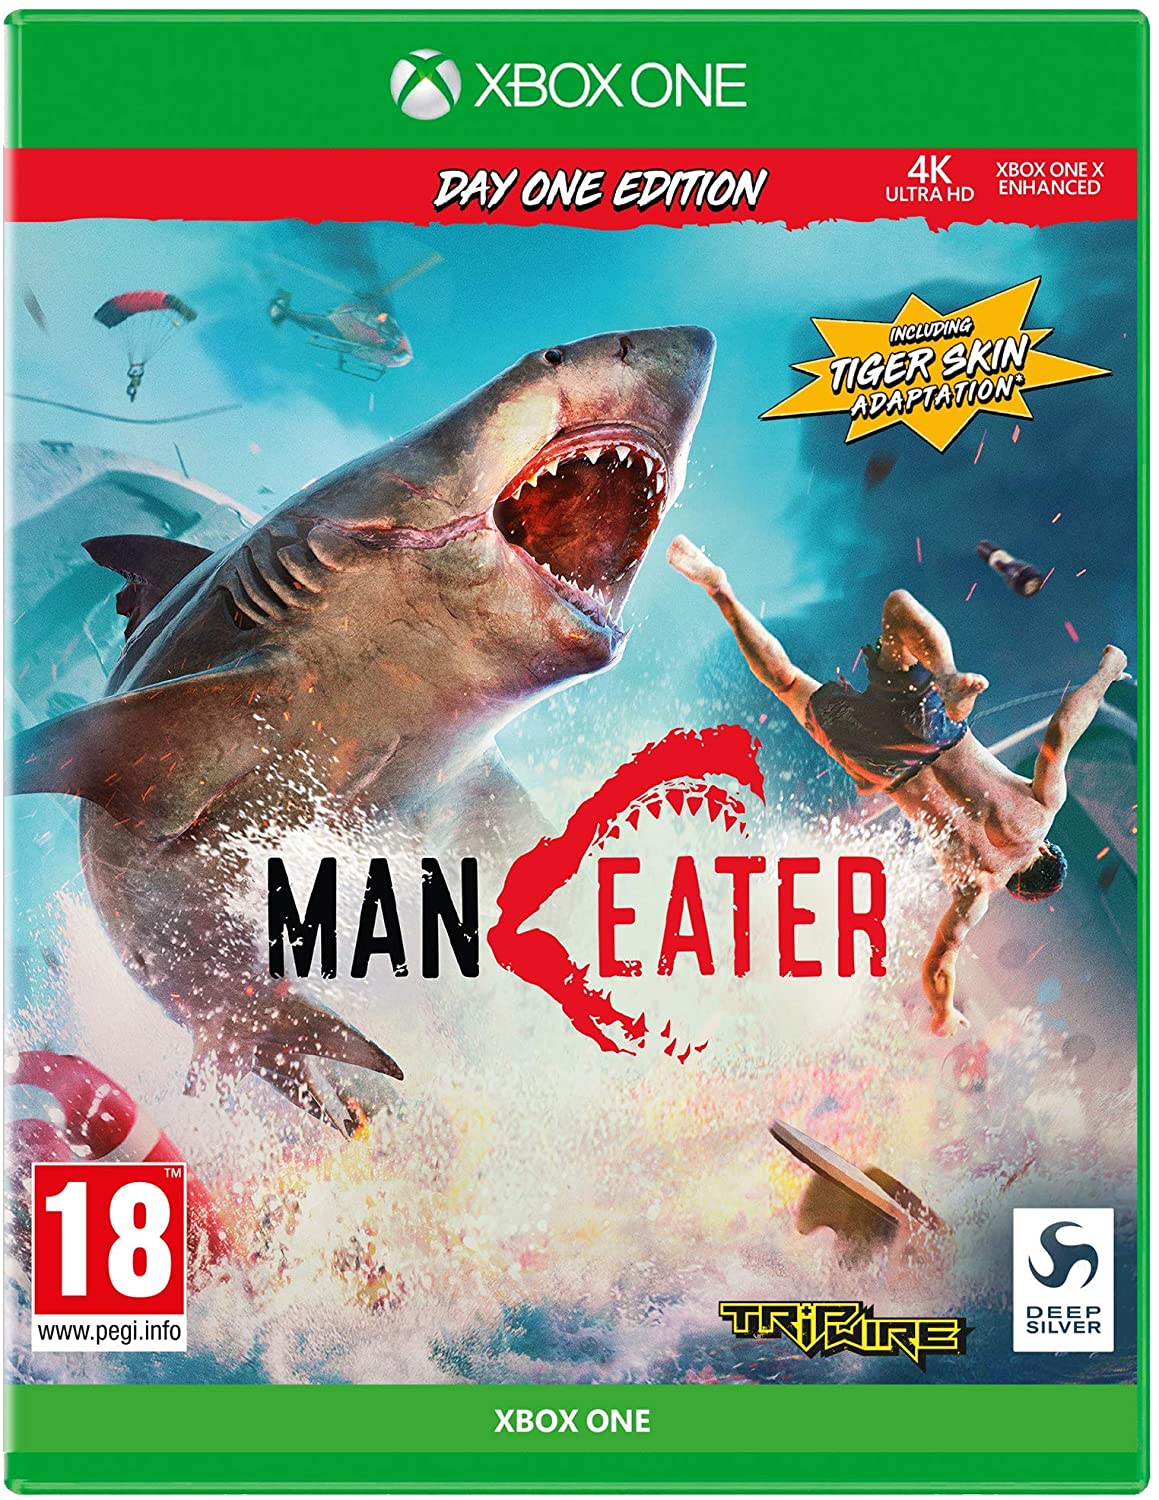 Maneater - Xbox One Játékok